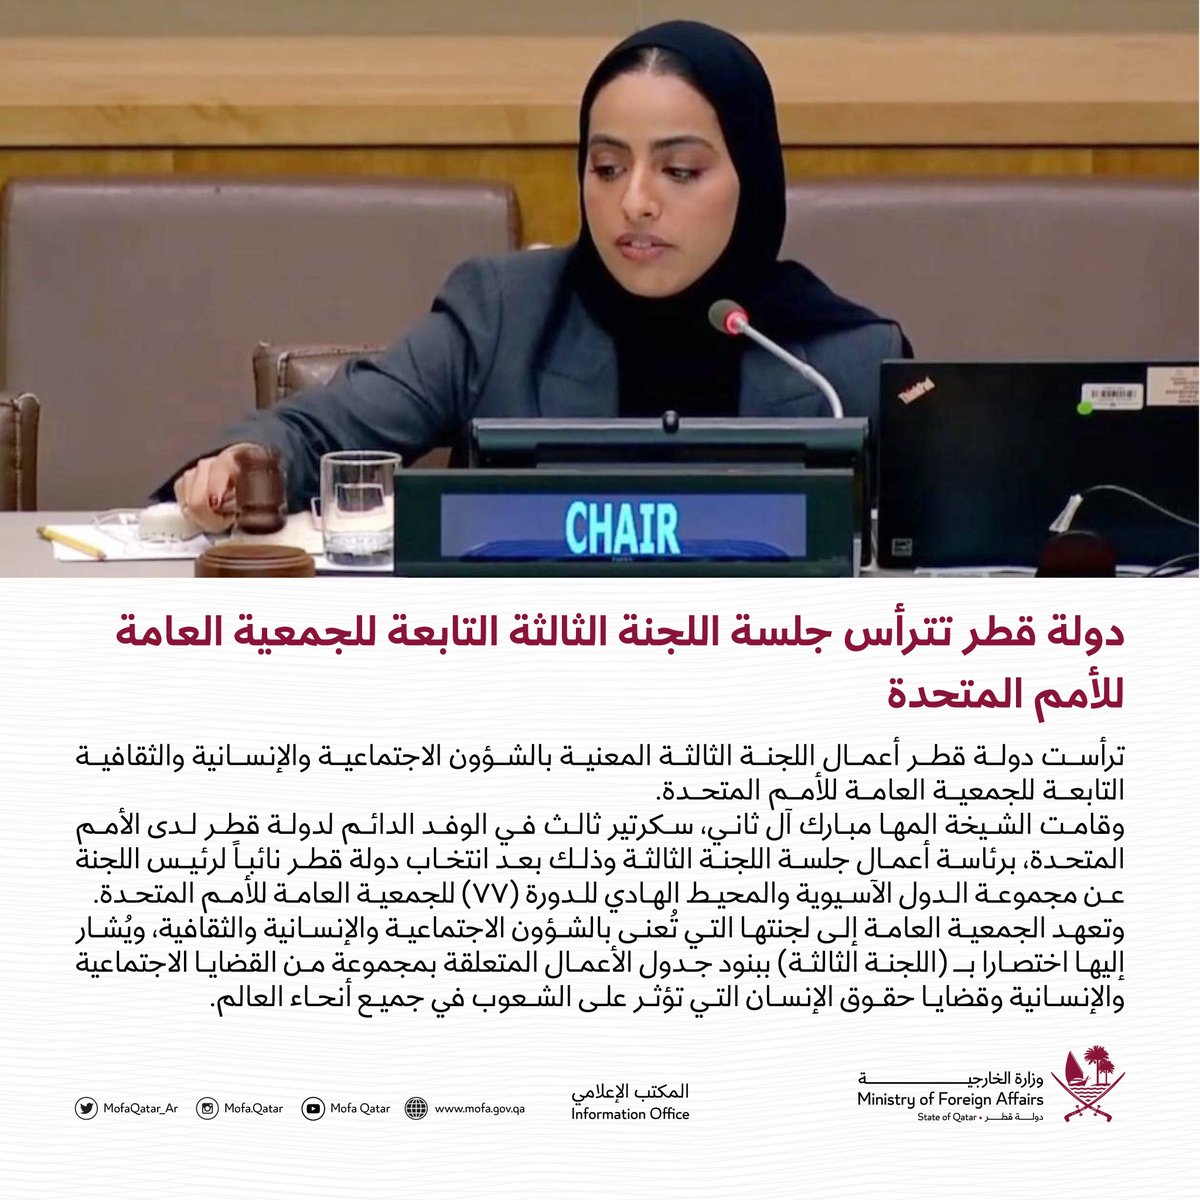 دولة قطر تترأس جلسة اللجنة الثالثة التابعة للجمعية العامة للأمم المتحدة 🔗لقراءة المزيد : bit.ly/3CnVaF7 #الخارجية_القطرية